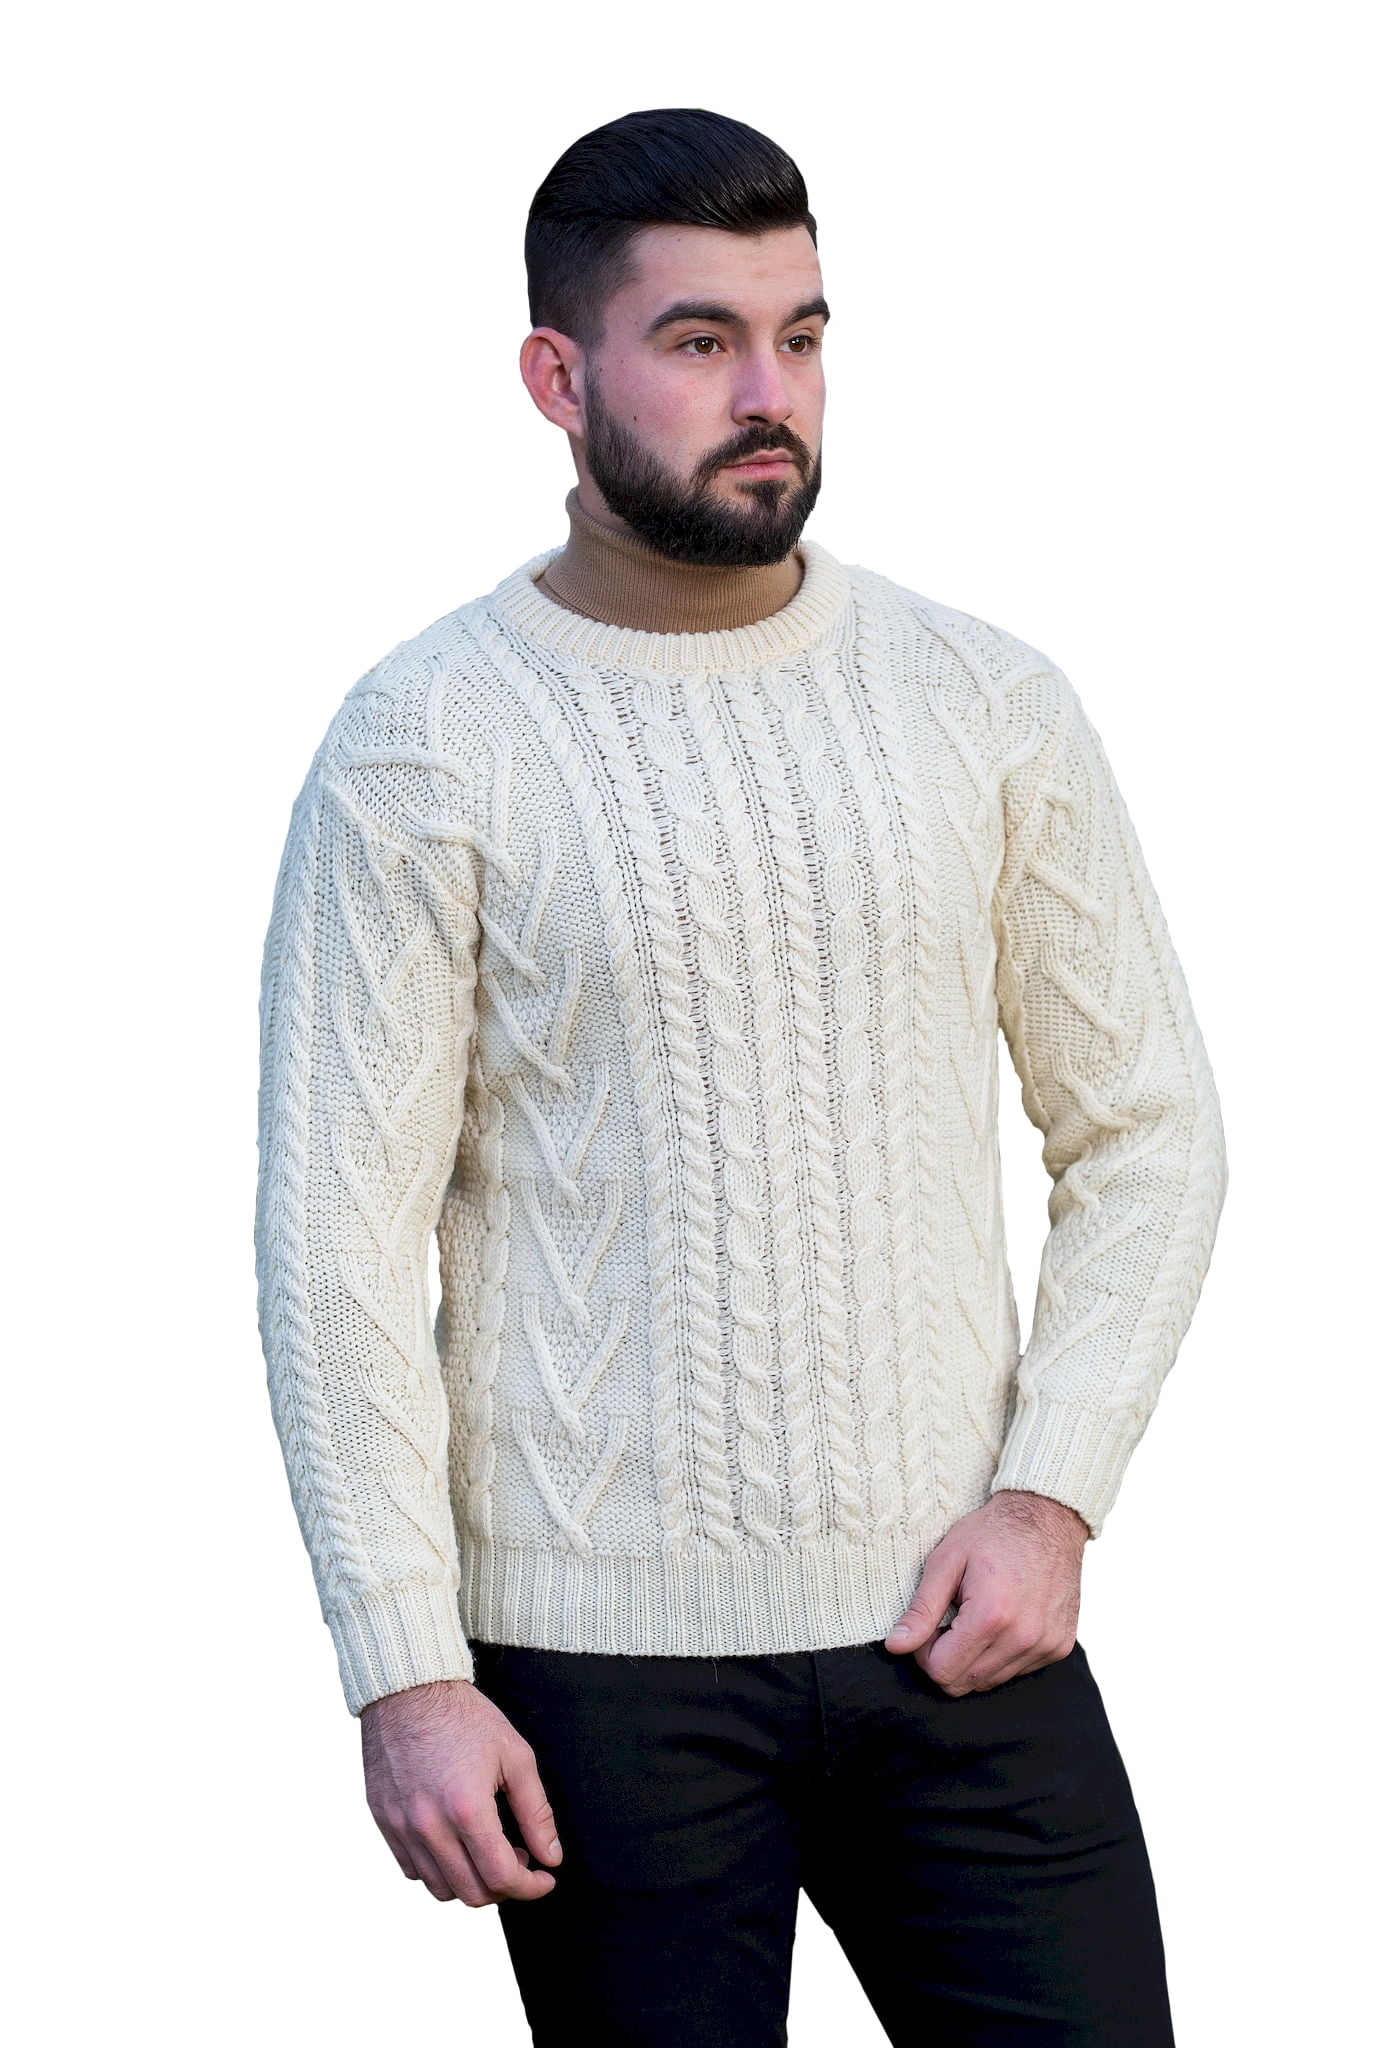 SAOL - SAOL Irish Fisherman Sweater for Men 100% Merino Wool Cable Knit ...